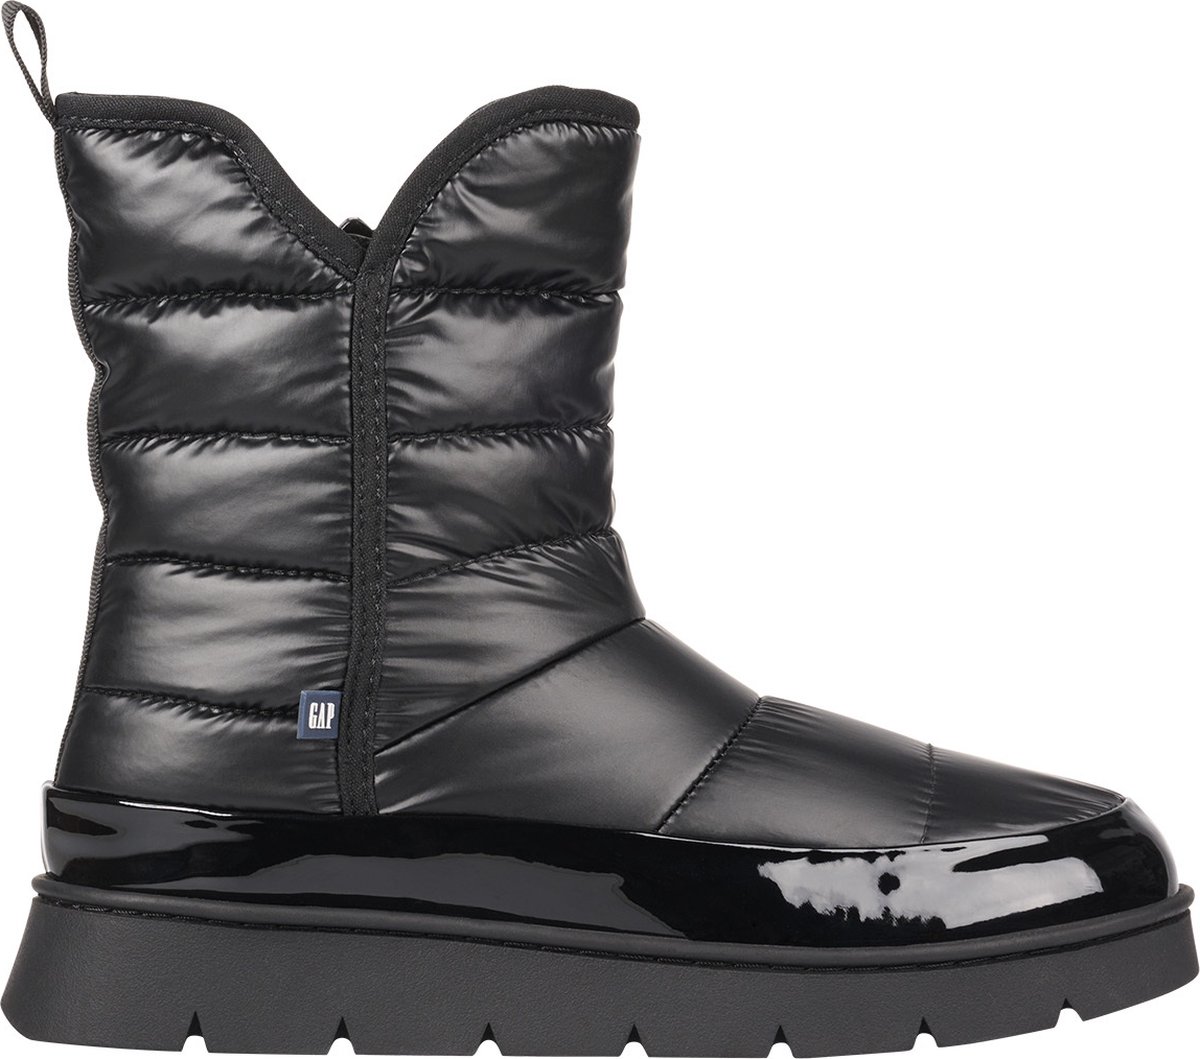 Gap - Ankle Boot/Bootie - Female - Black - 36 - Laarzen